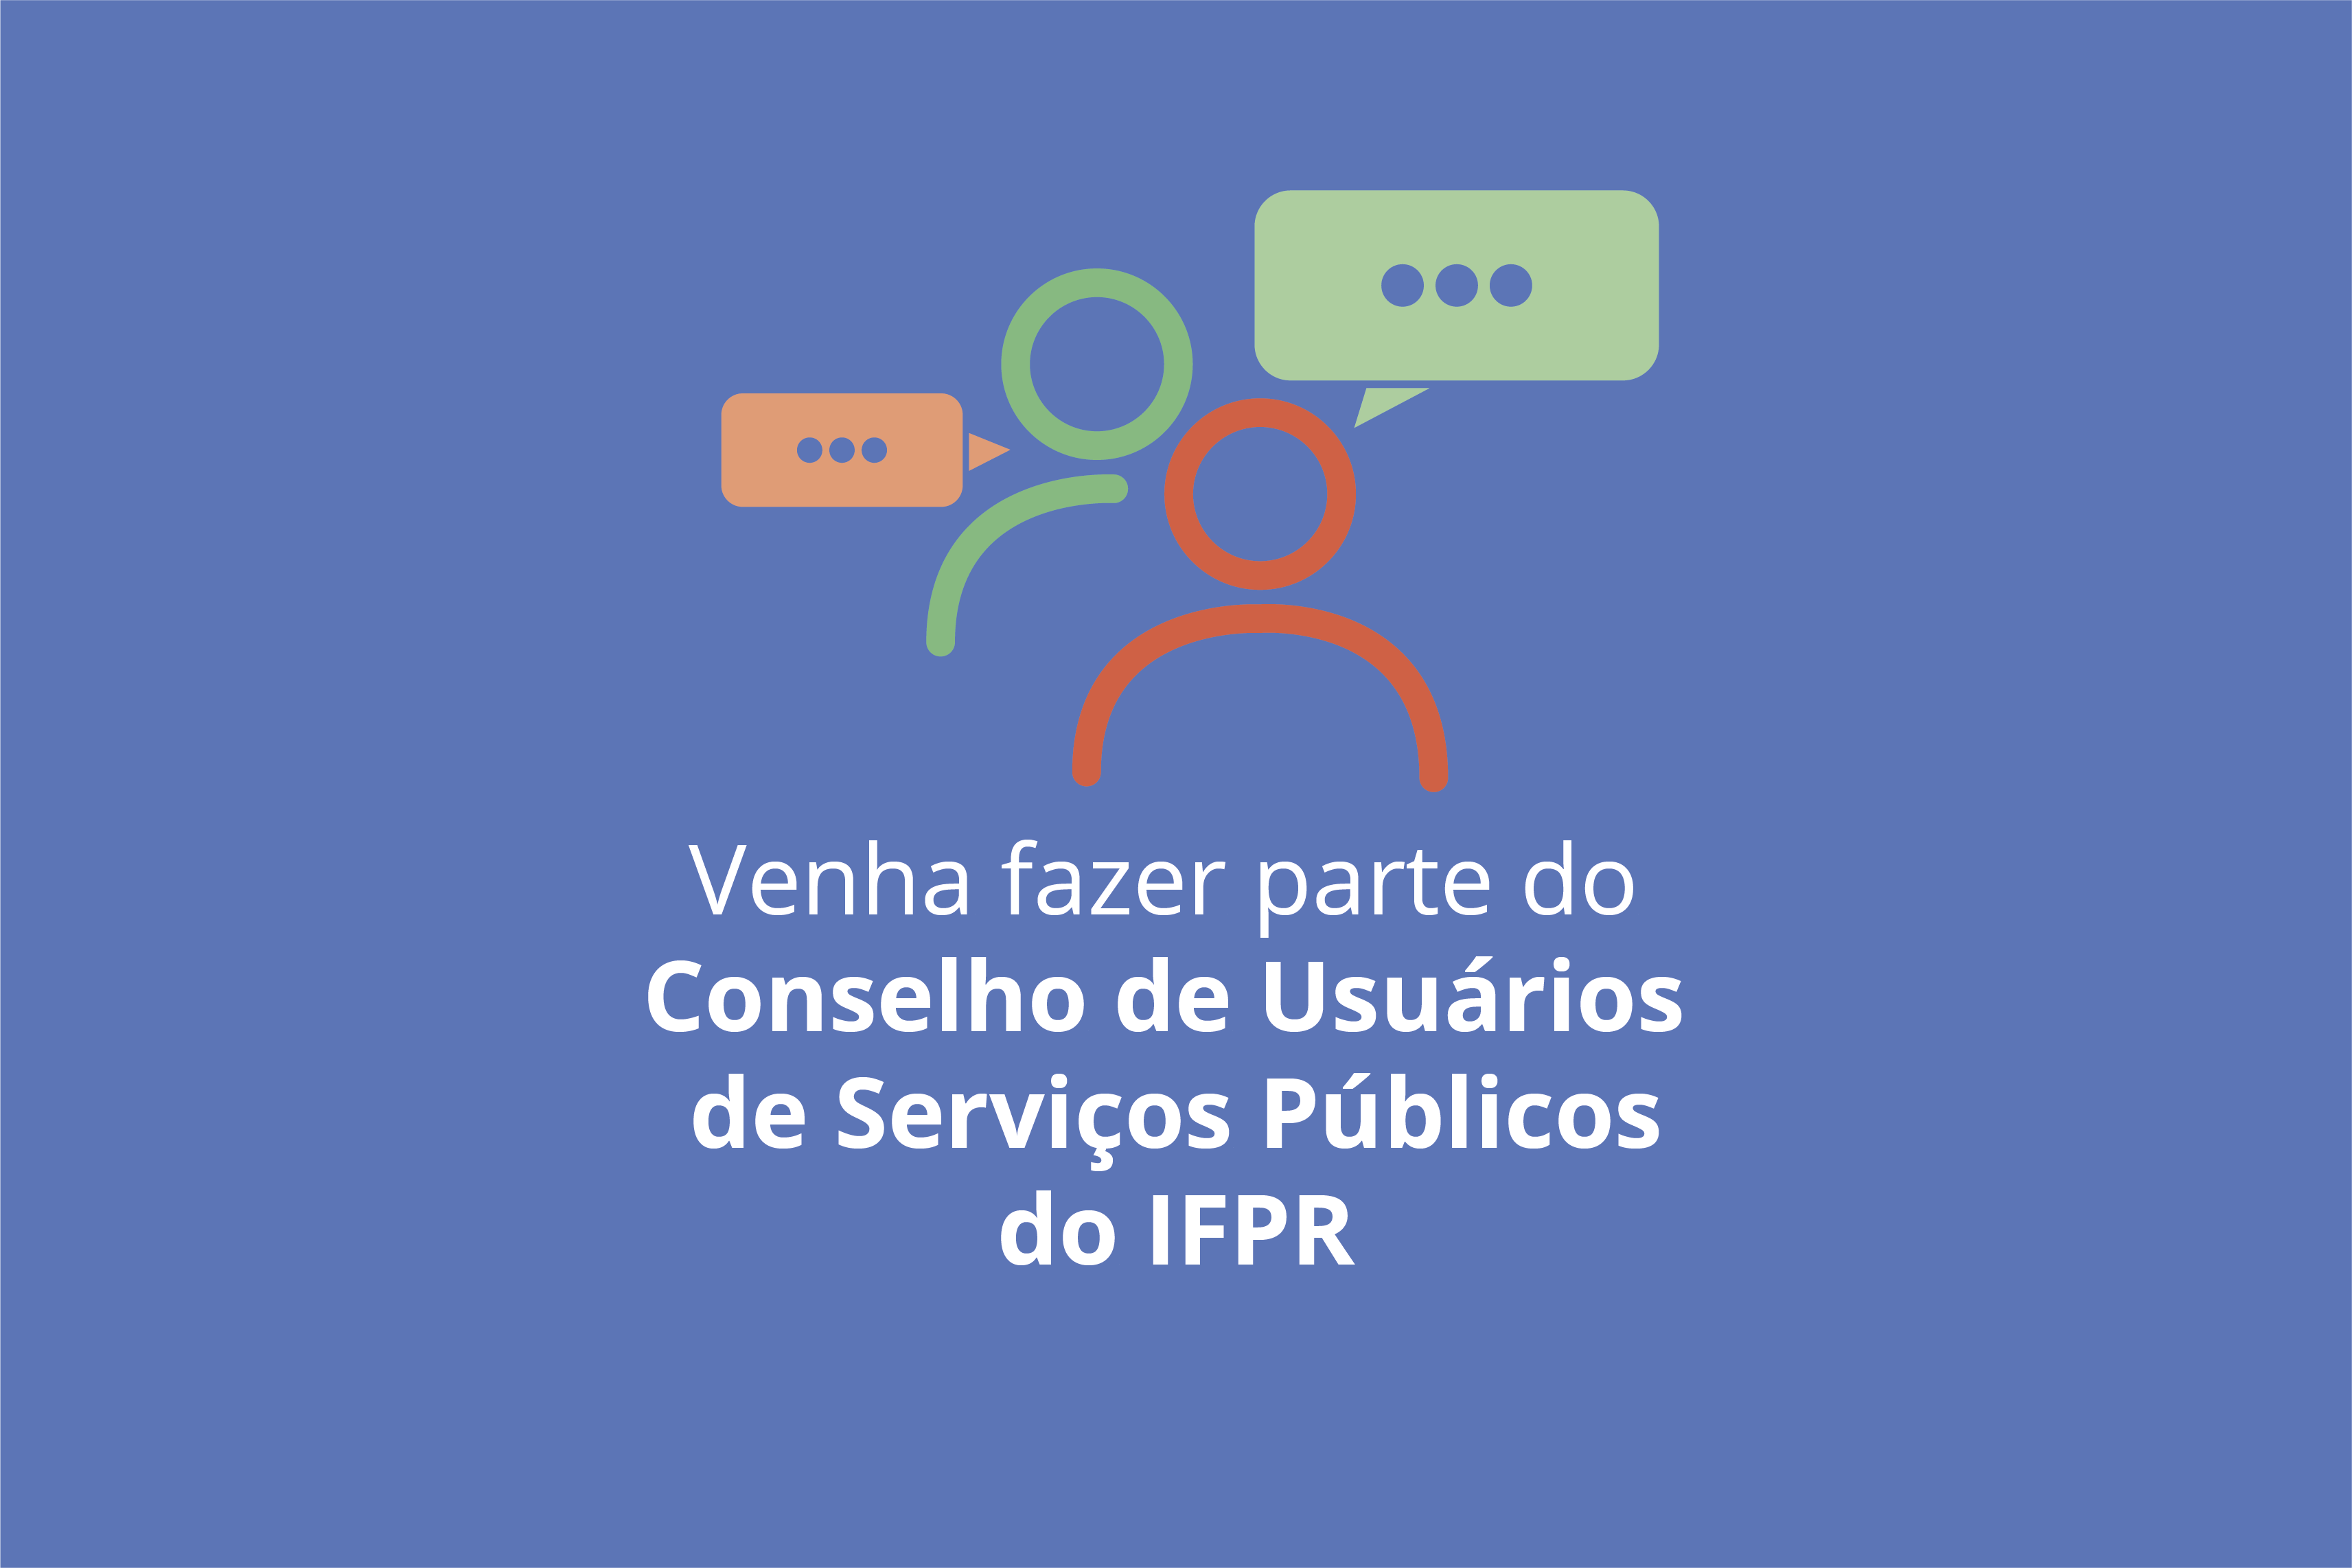 "Venha fazer parte do Conselho de Usuários de Serviços Públicos do IFPR"